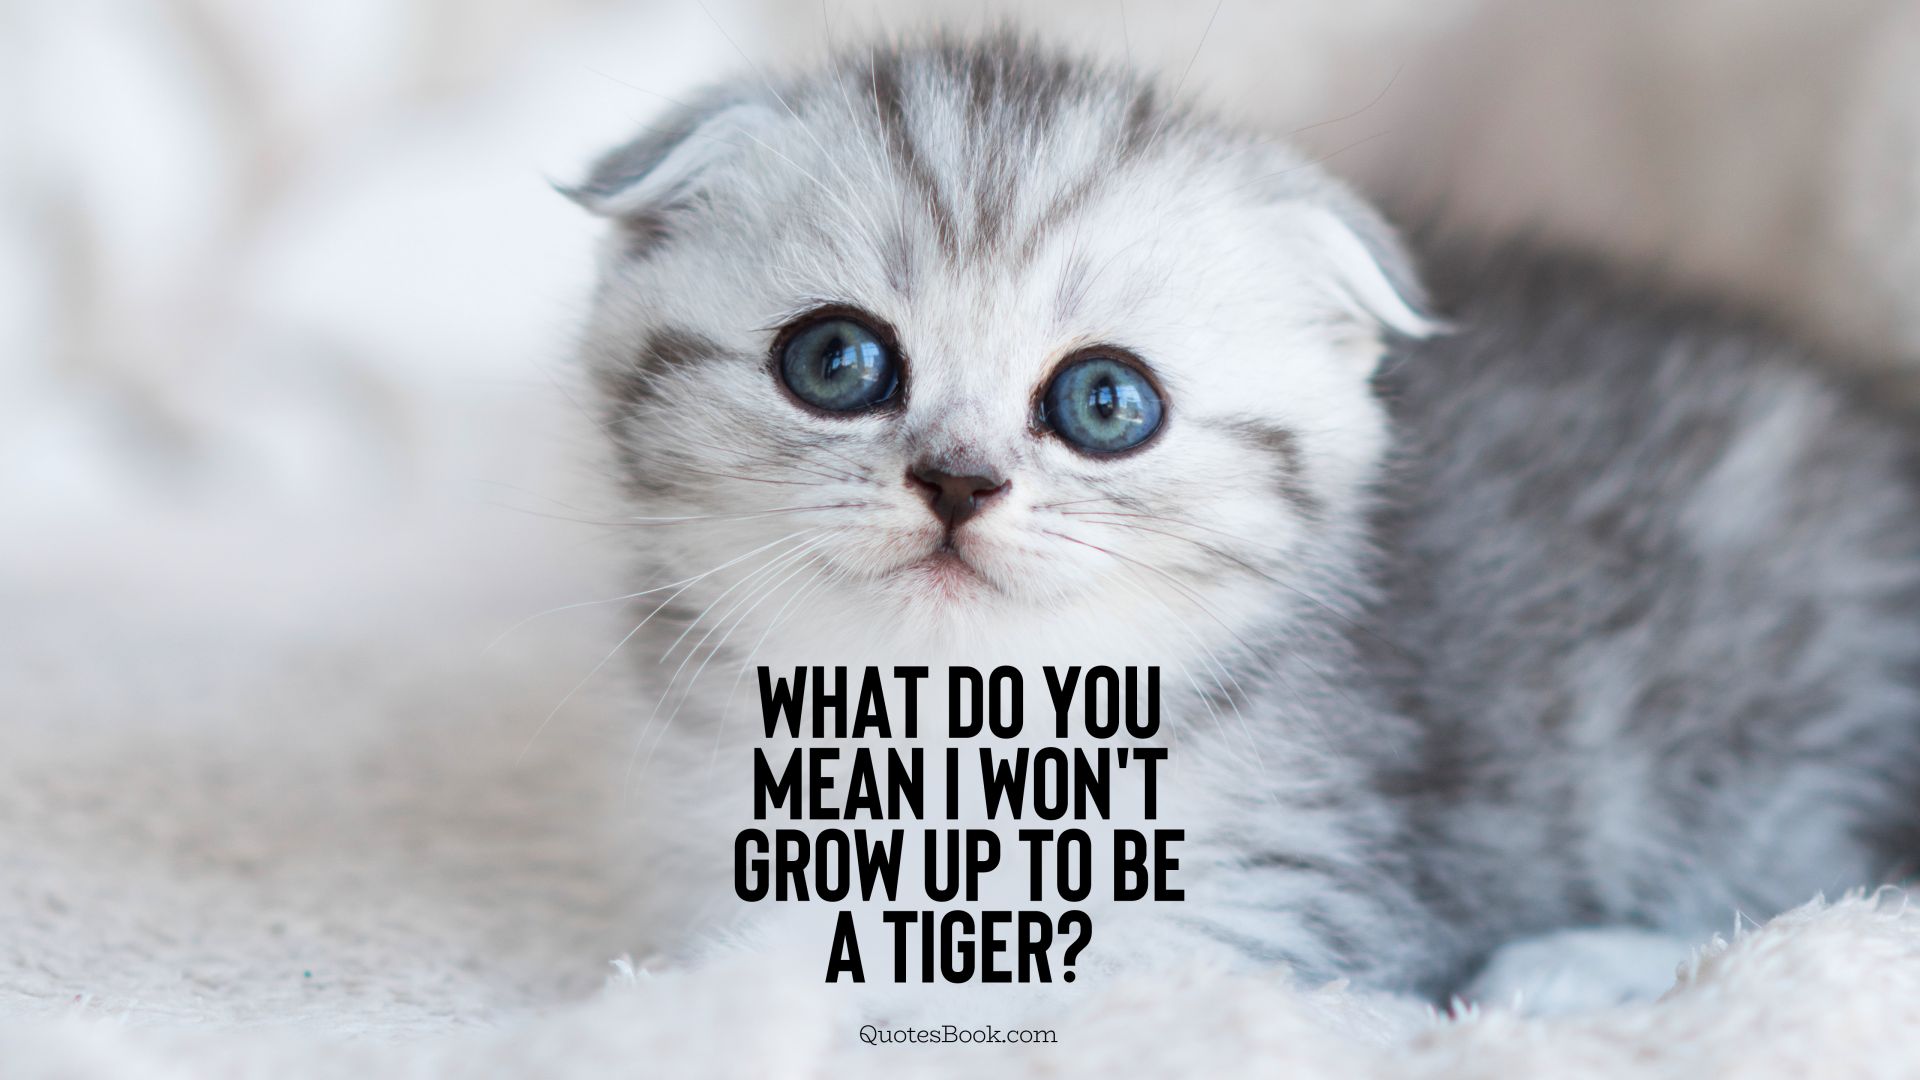 What do you mean I won't grow up to be a tiger?